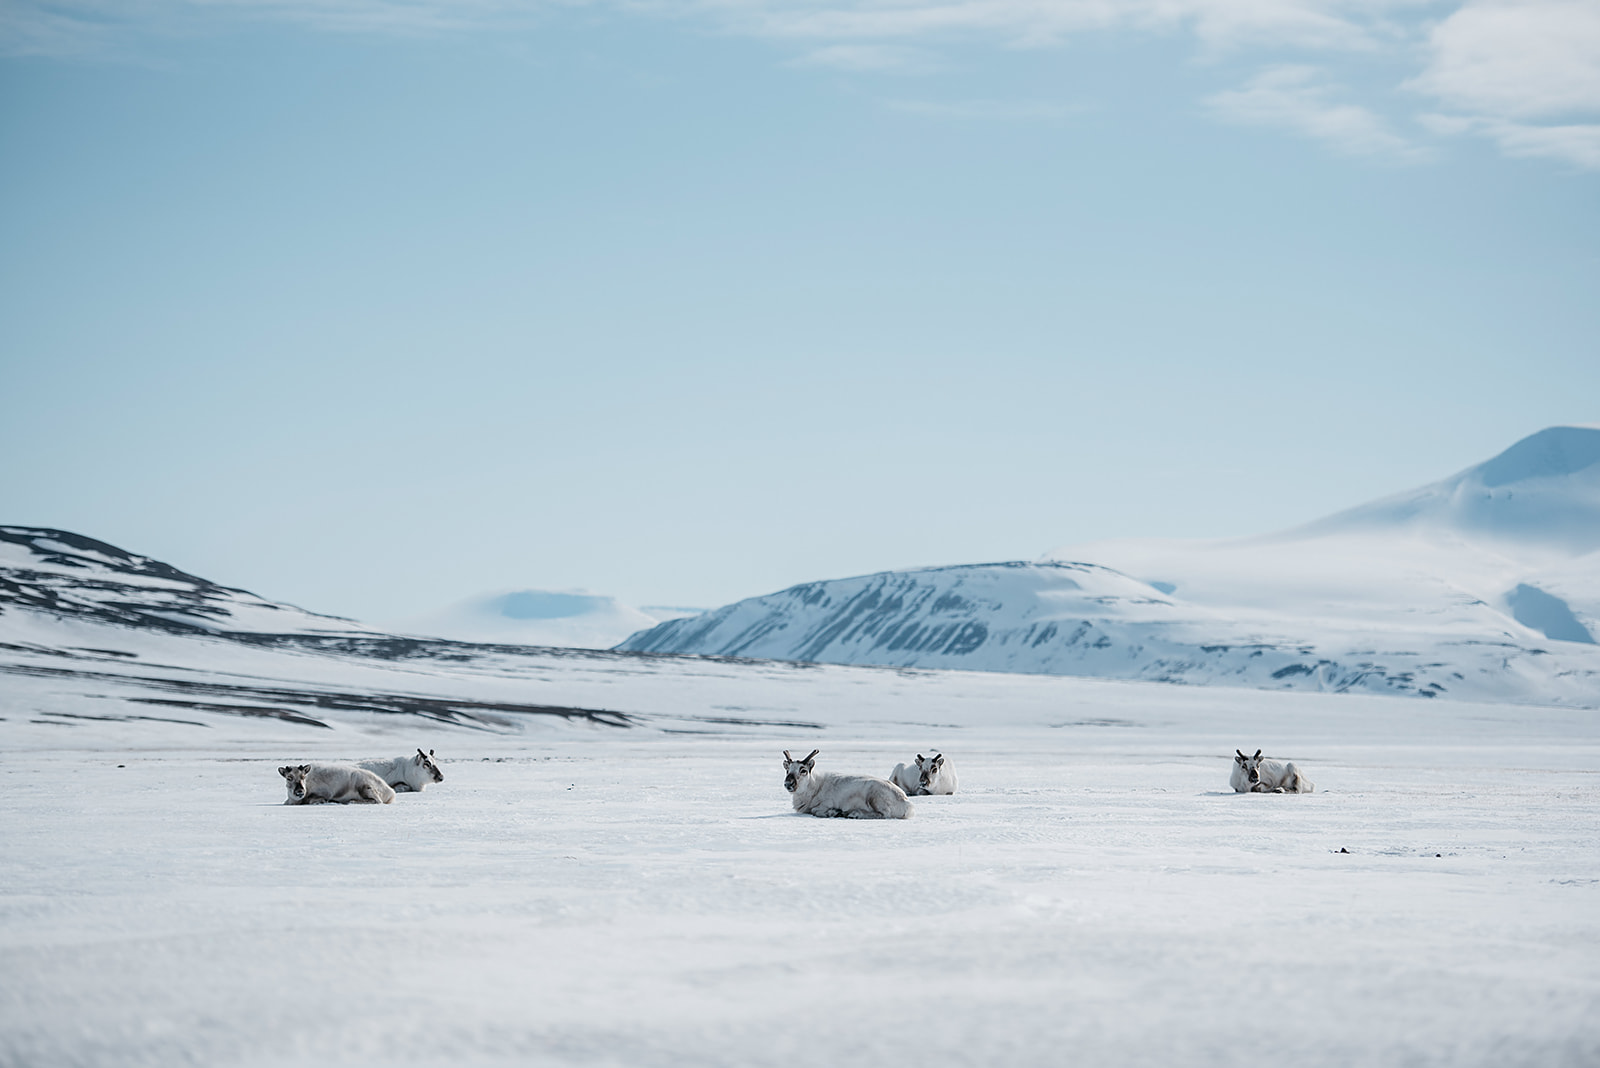 Reindeer relaxing in snow on Svalbard